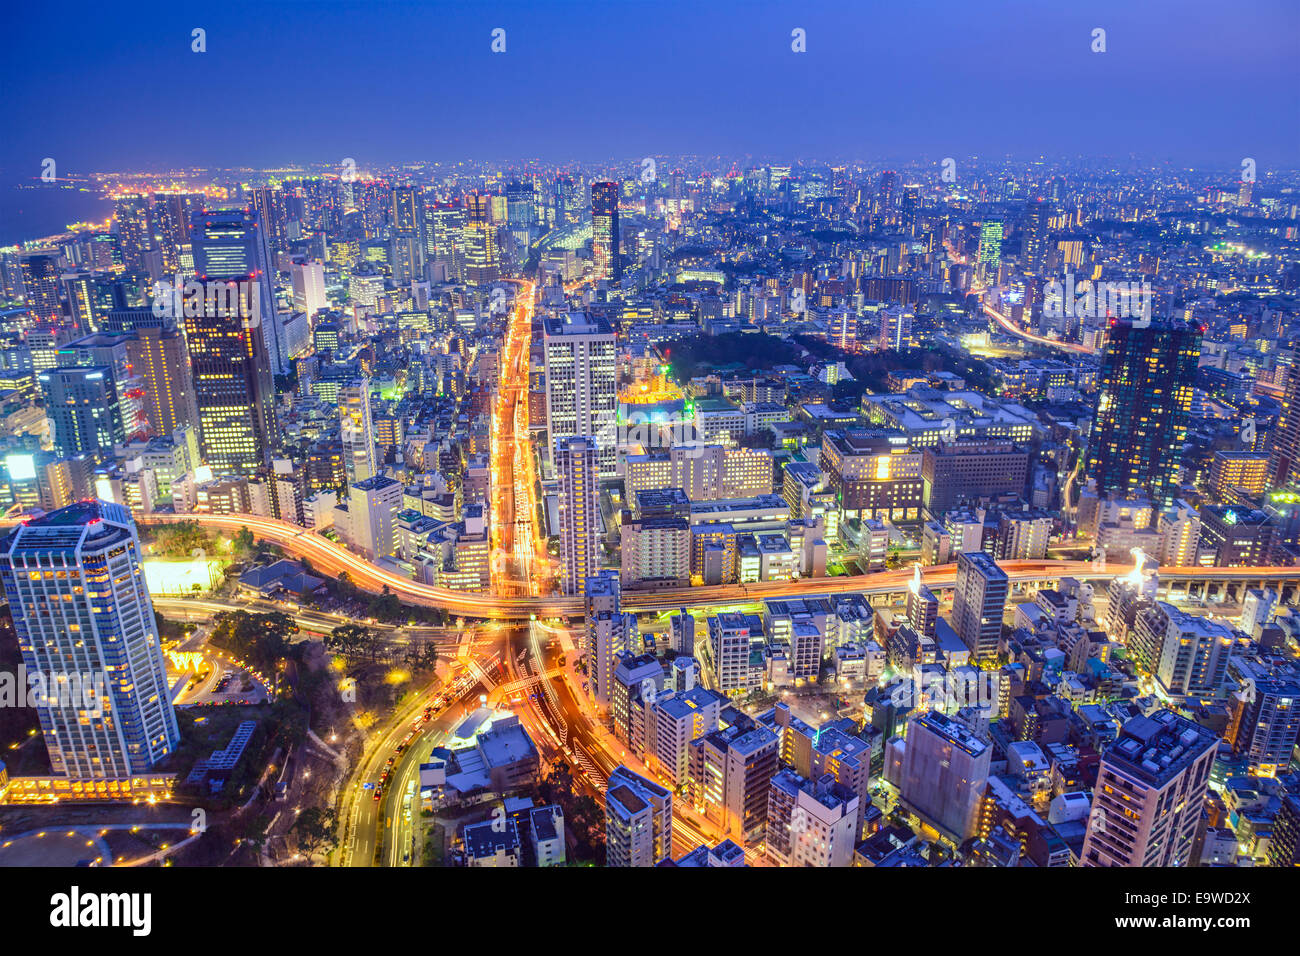 Tokyo, Japon ville au crépuscule au-dessus de la jonction de l'autoroute. Banque D'Images